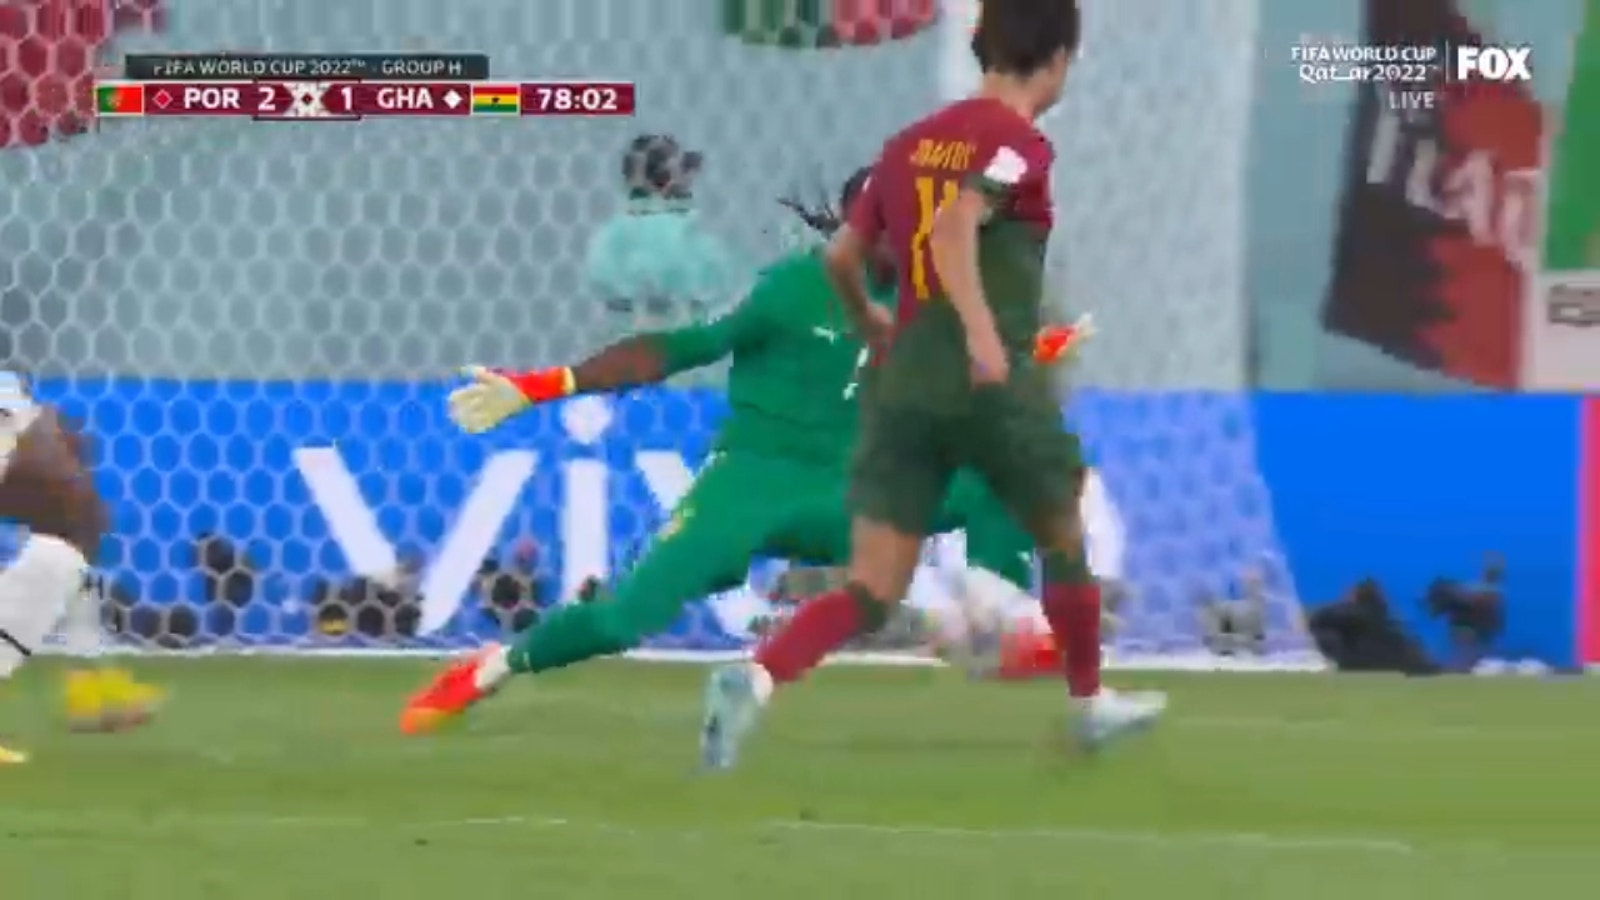 Joao Felix of Portugal scores against Ghana